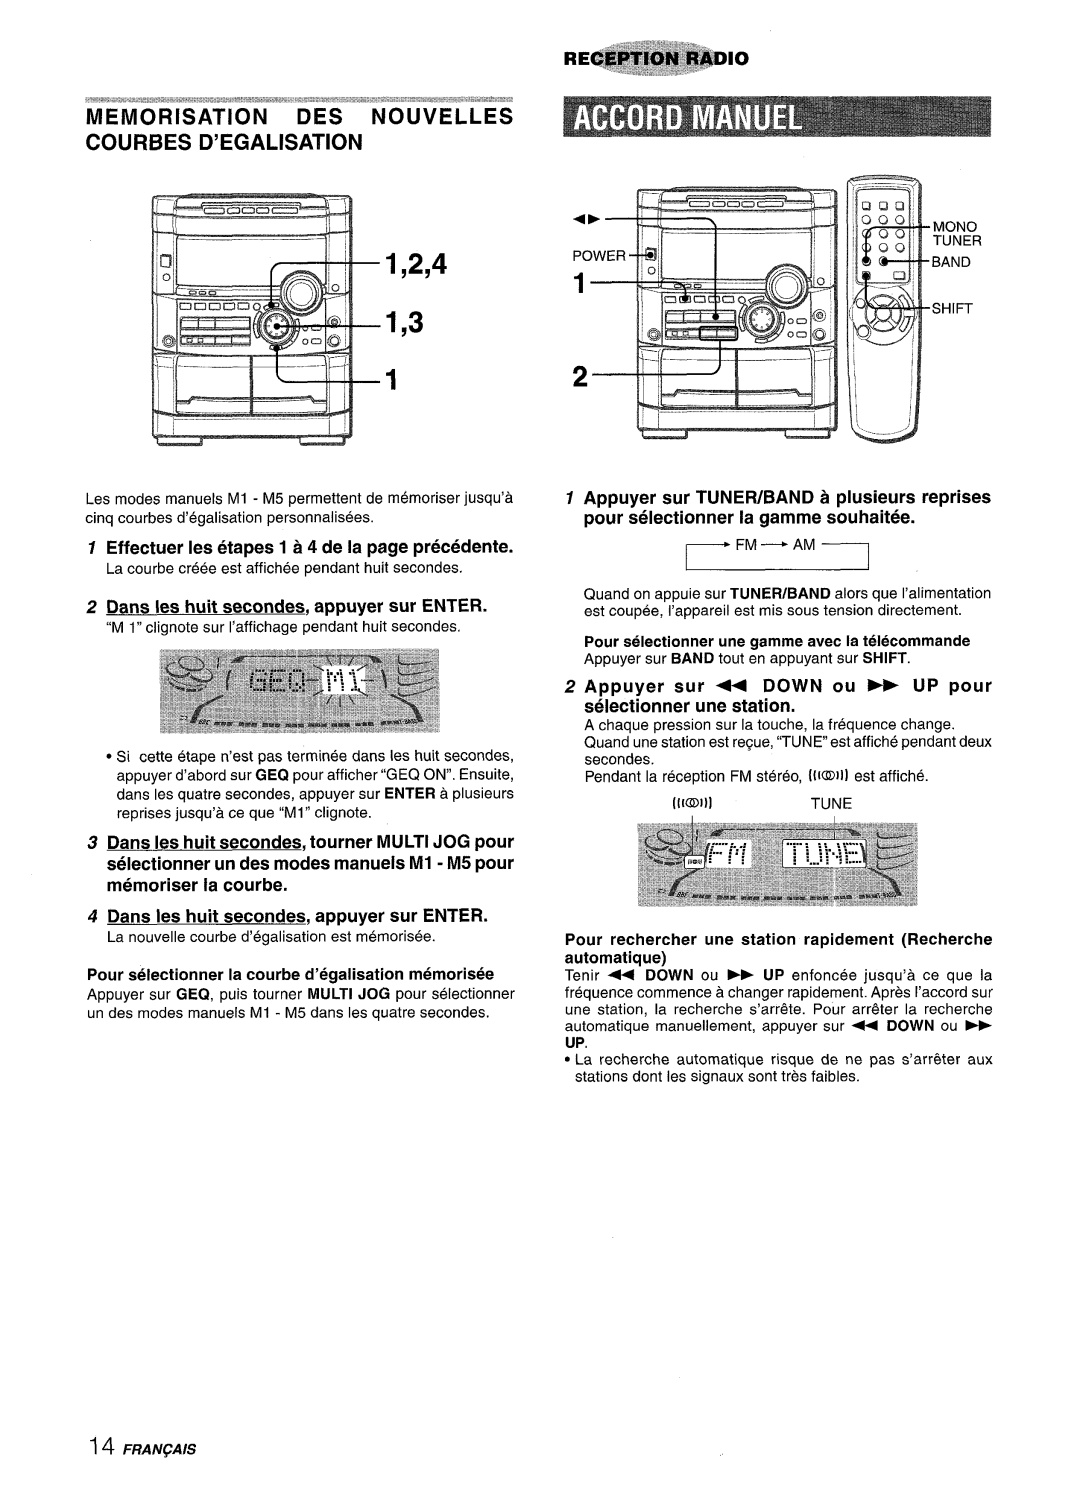 Sony NSX-A777 manual Memorisation Des Nouvelles Courbes D’Egalisation, Effectuer Ies etapes 1 a 4 de la page precedence 